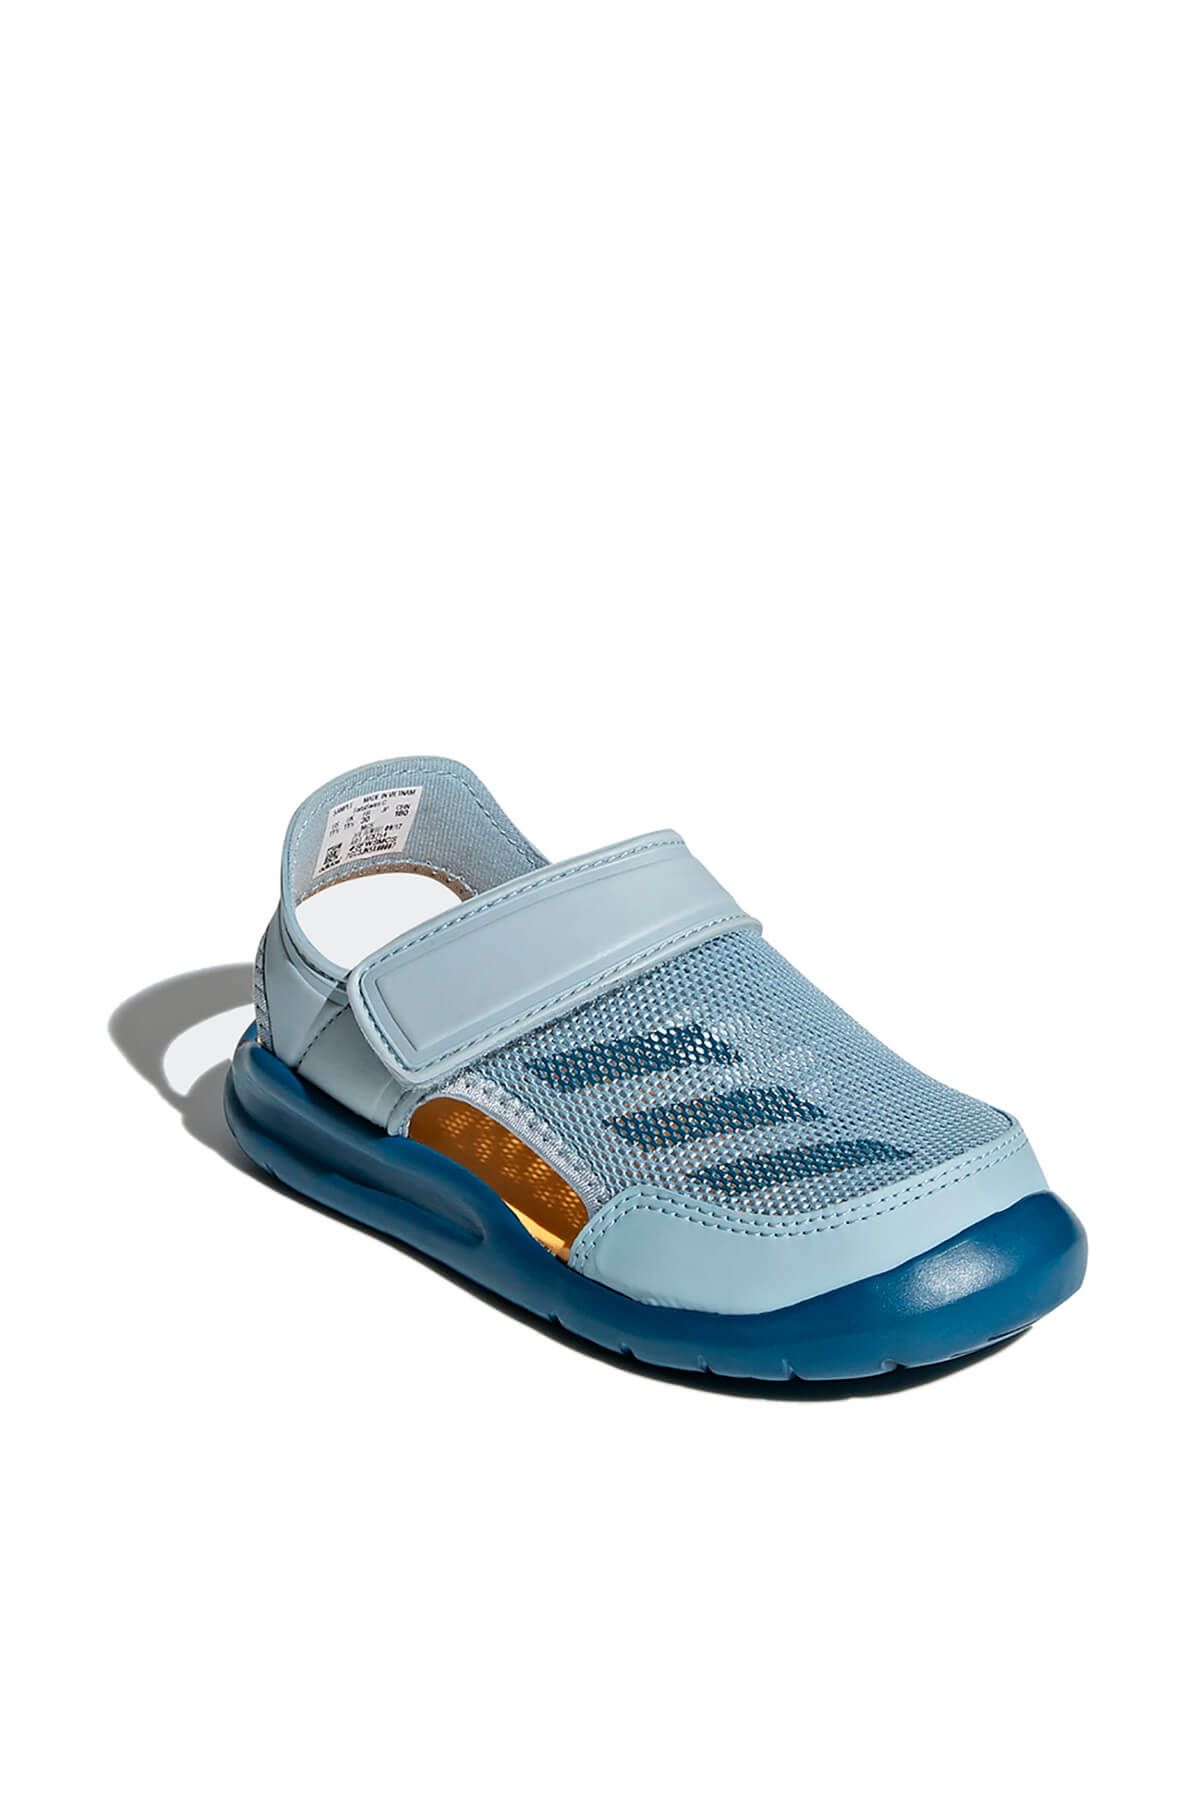 adidas Açık Mavi Unisex Çocuk Sandalet FortaSwim C